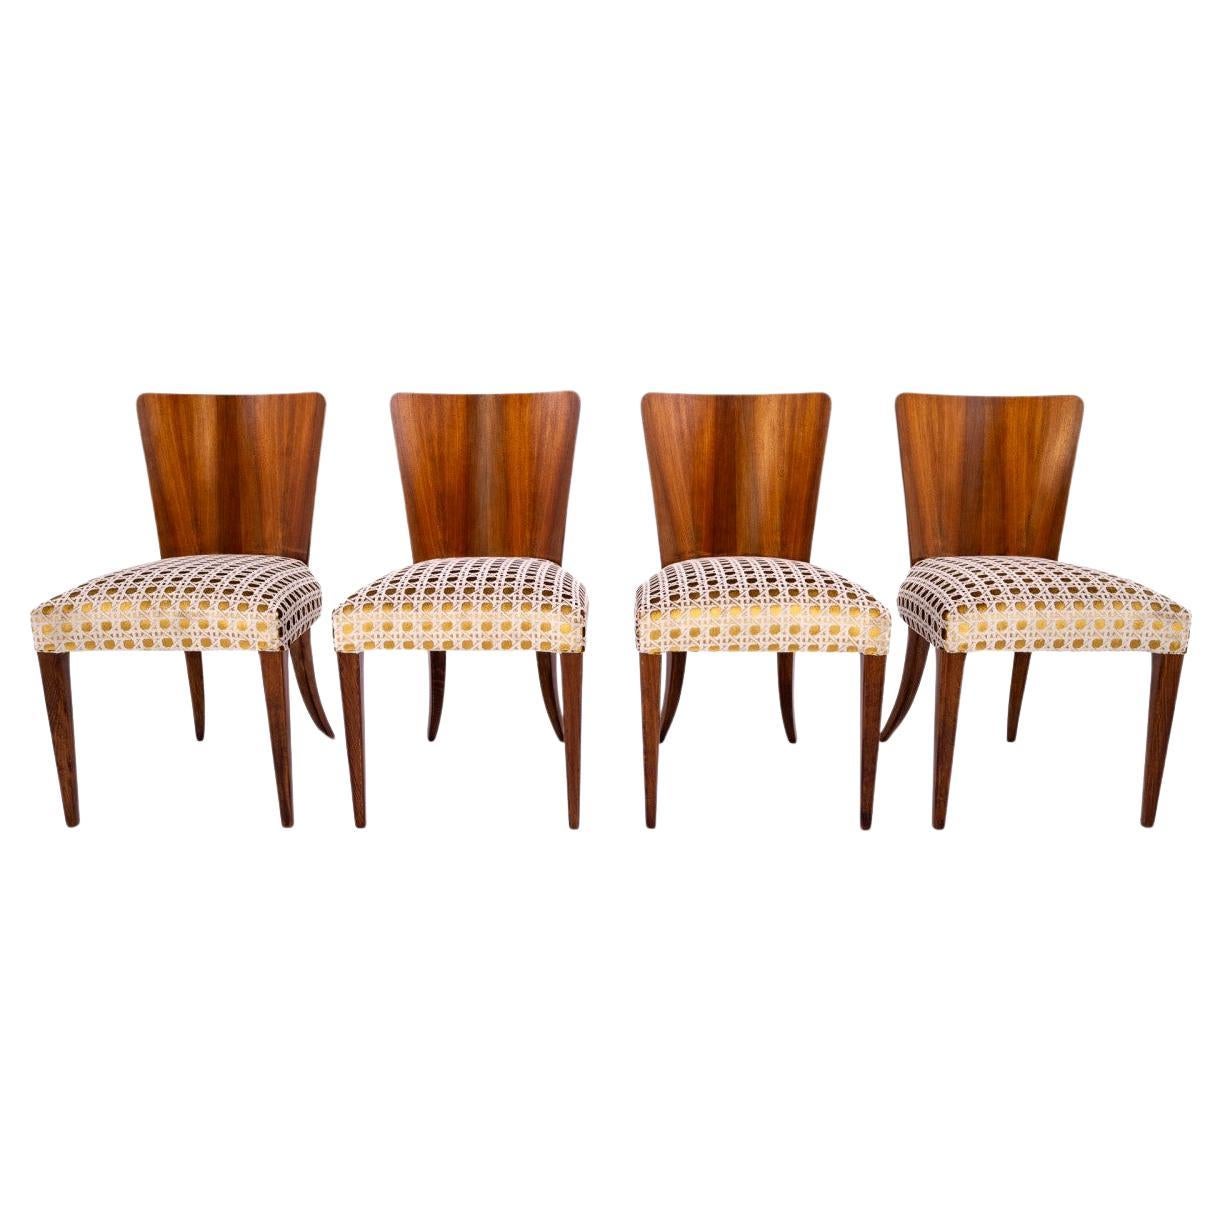 Ensemble de 4 chaises conçues par Halabala, années 1930